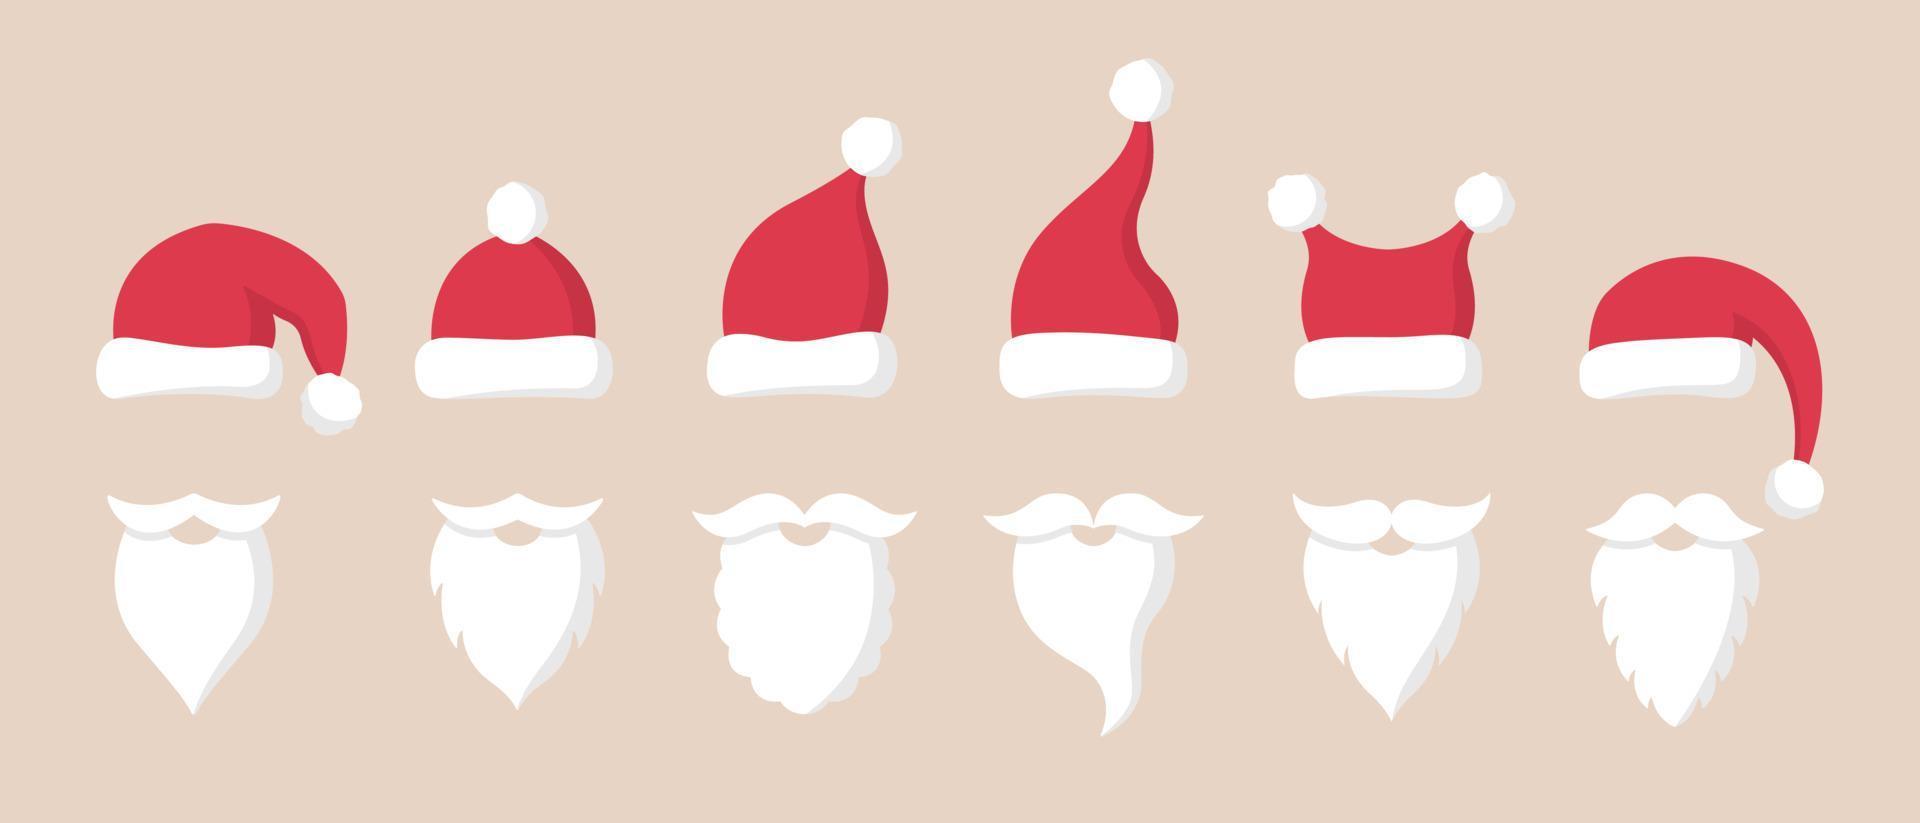 colección de sombreros rojos de santa claus, bigote y barba. símbolos navideños en estilo plano. vector